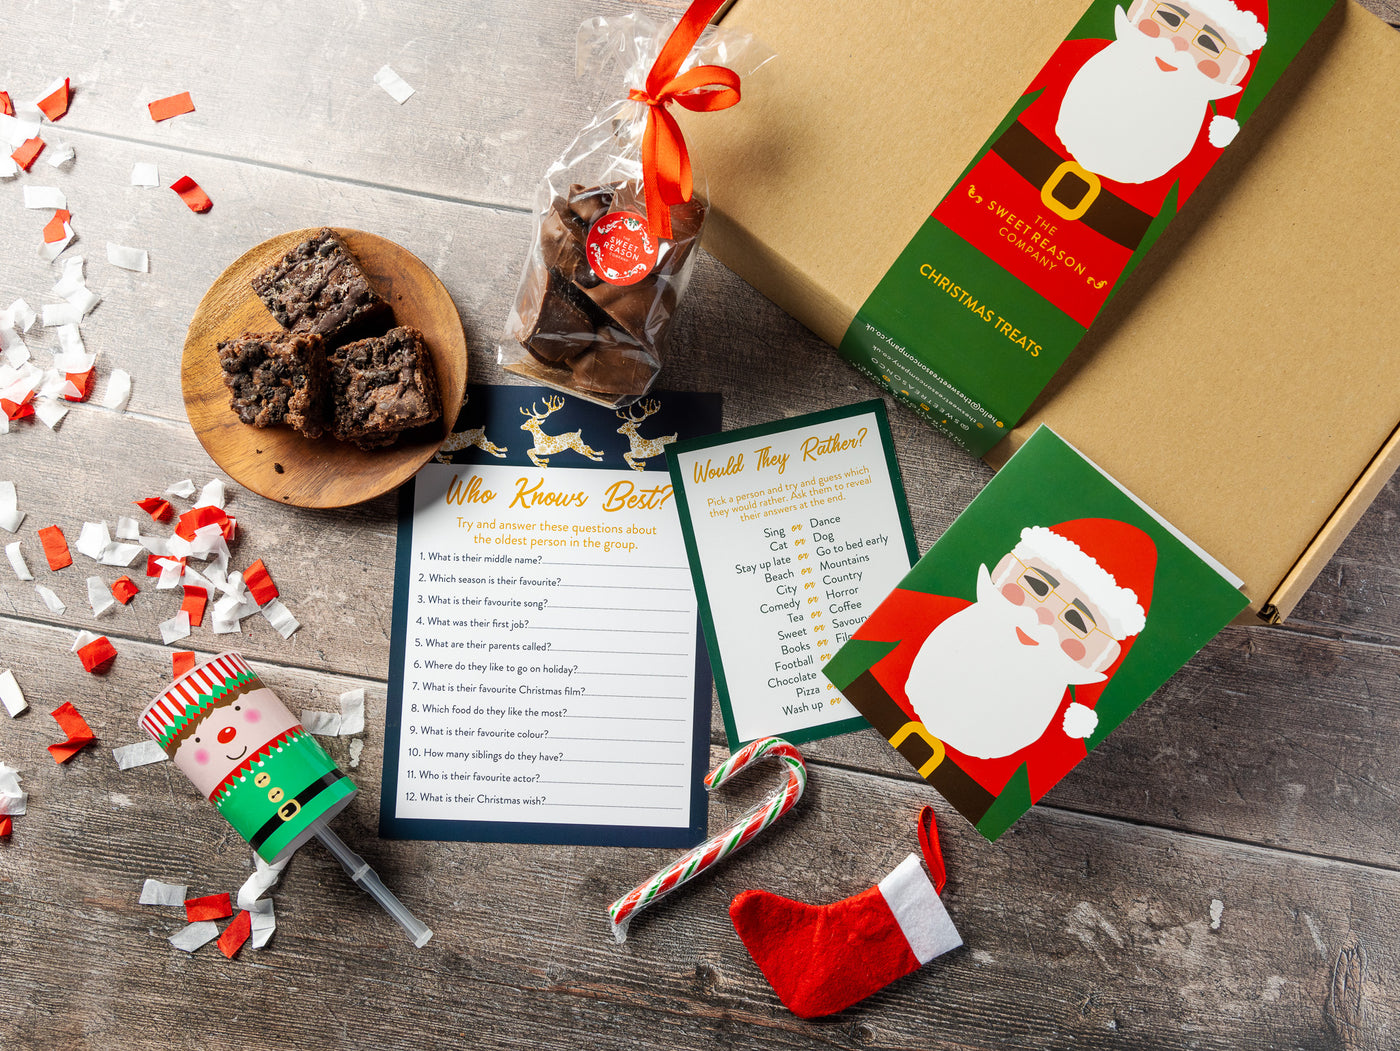 'Santa' Festive Treats & Brownies